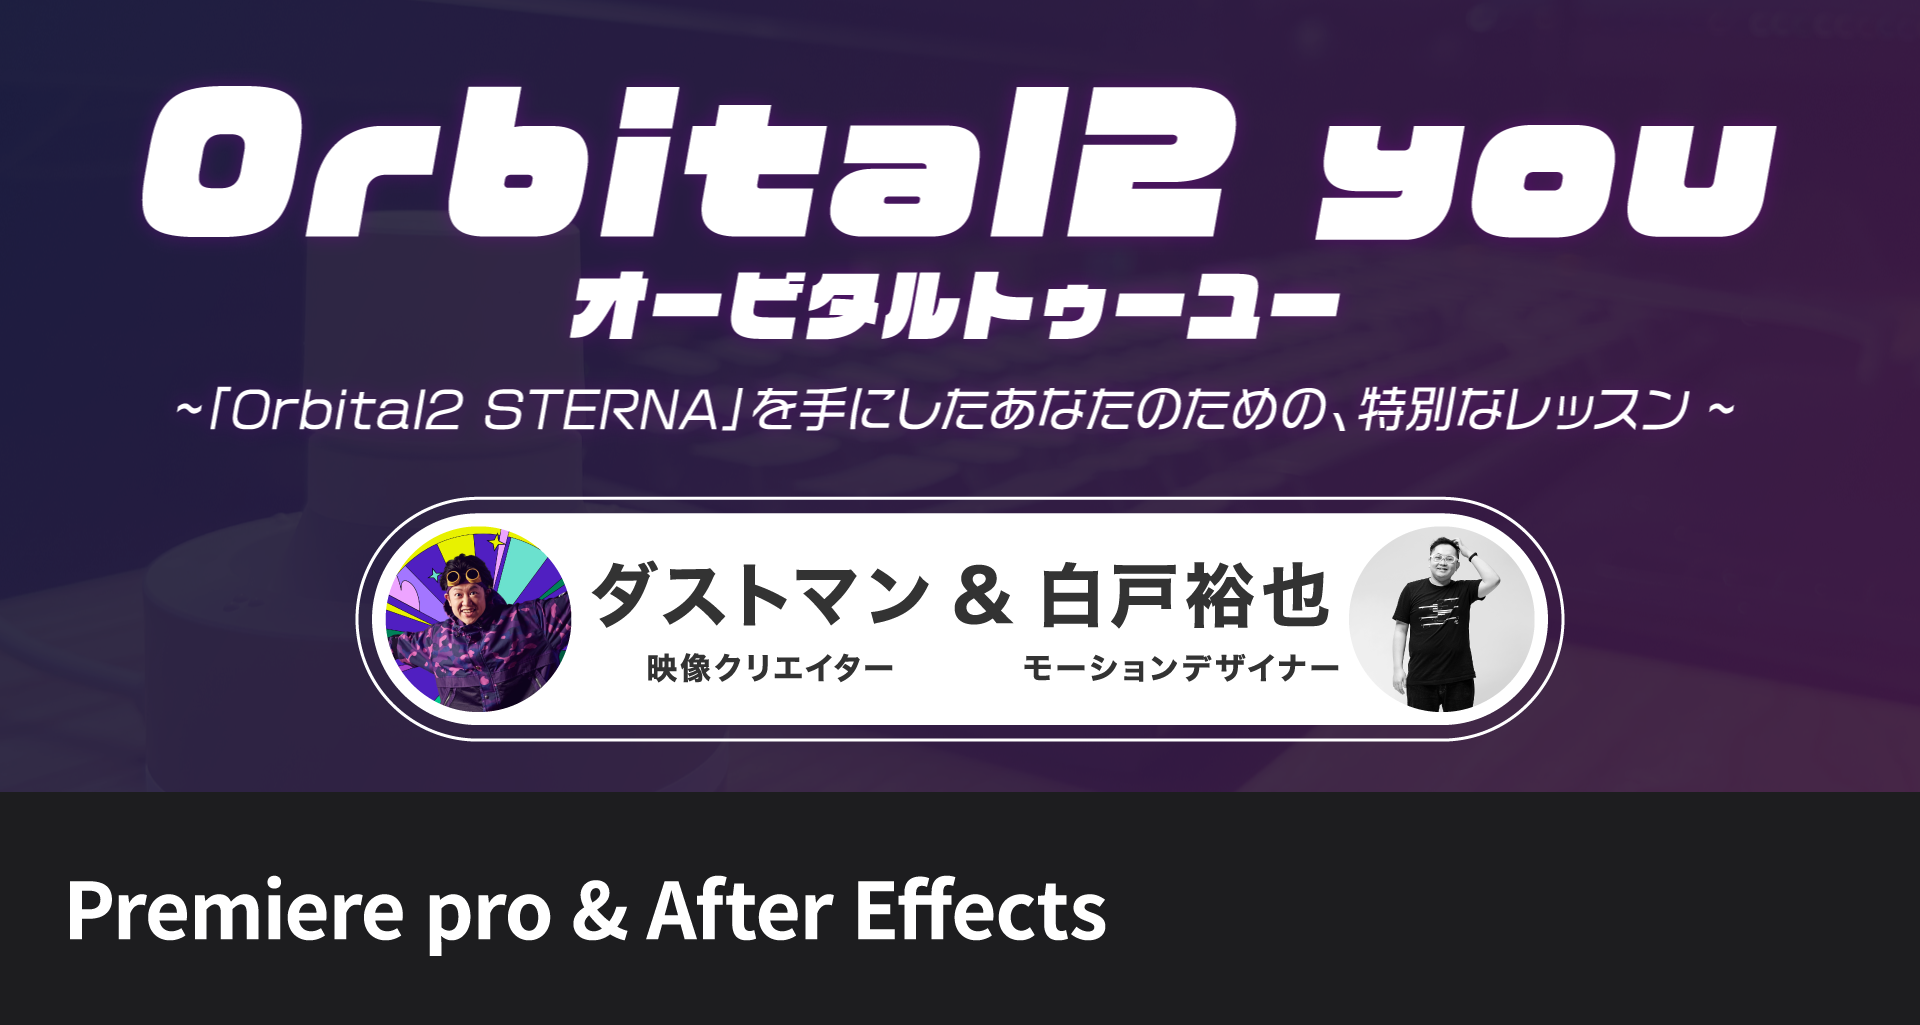 ダストマン & 白戸 裕也 - After Effects/Premiere Pro